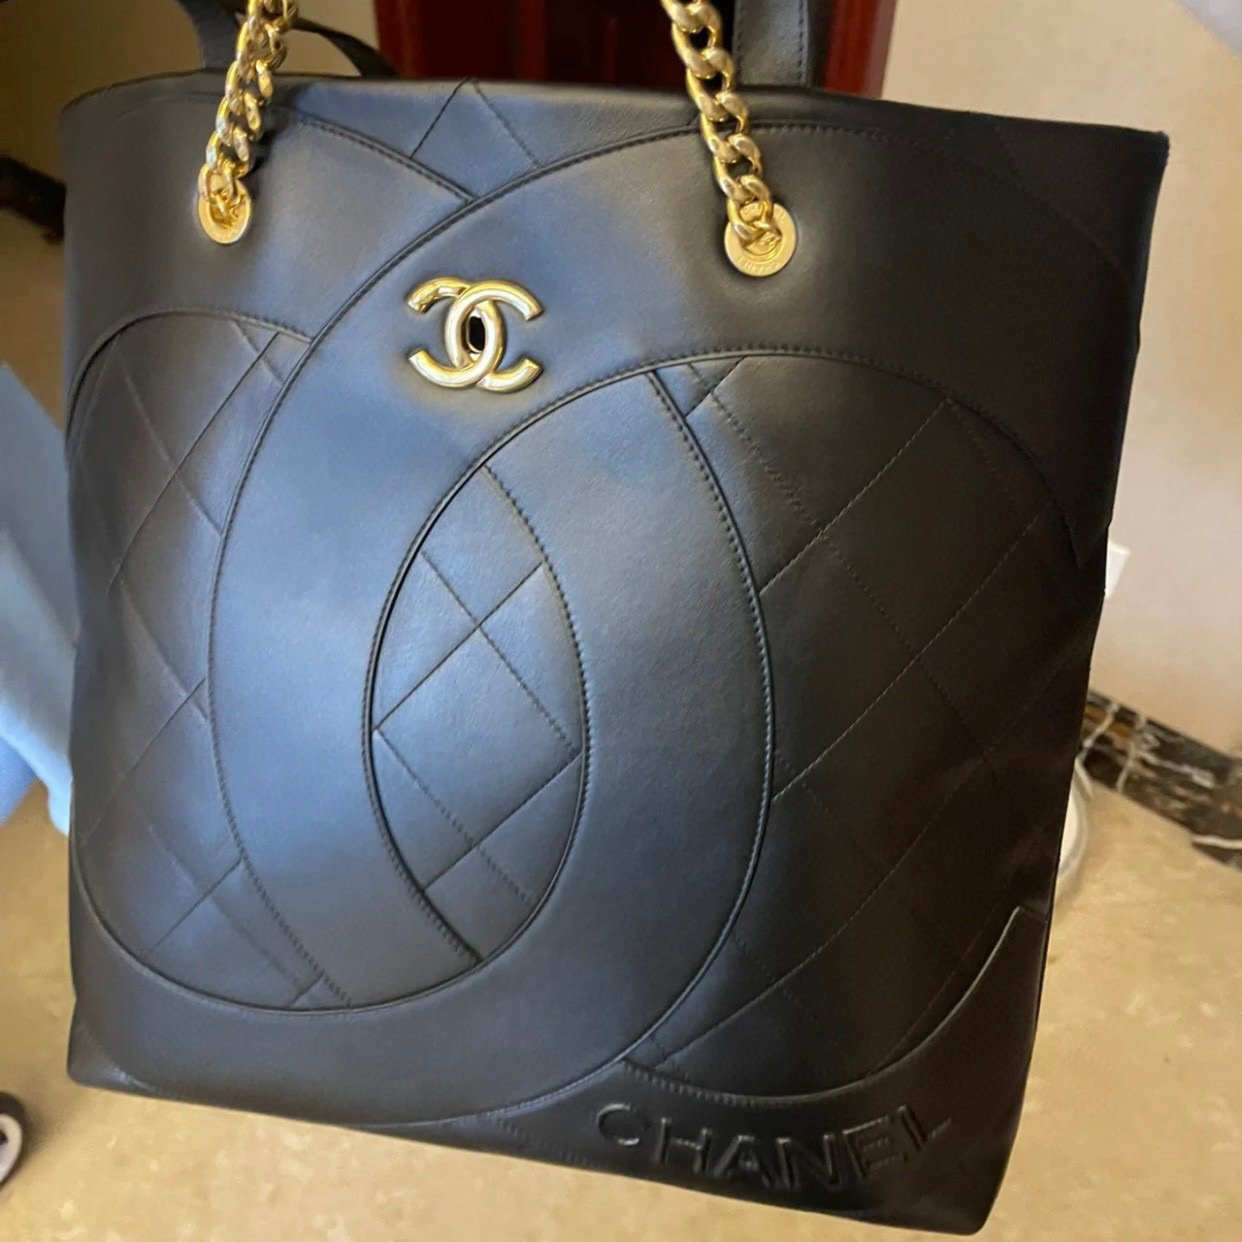 Túi xách nữ chanel big size mẫu mới đẹp sang VIP 11 4450k Mẫu AS847   lien fashion